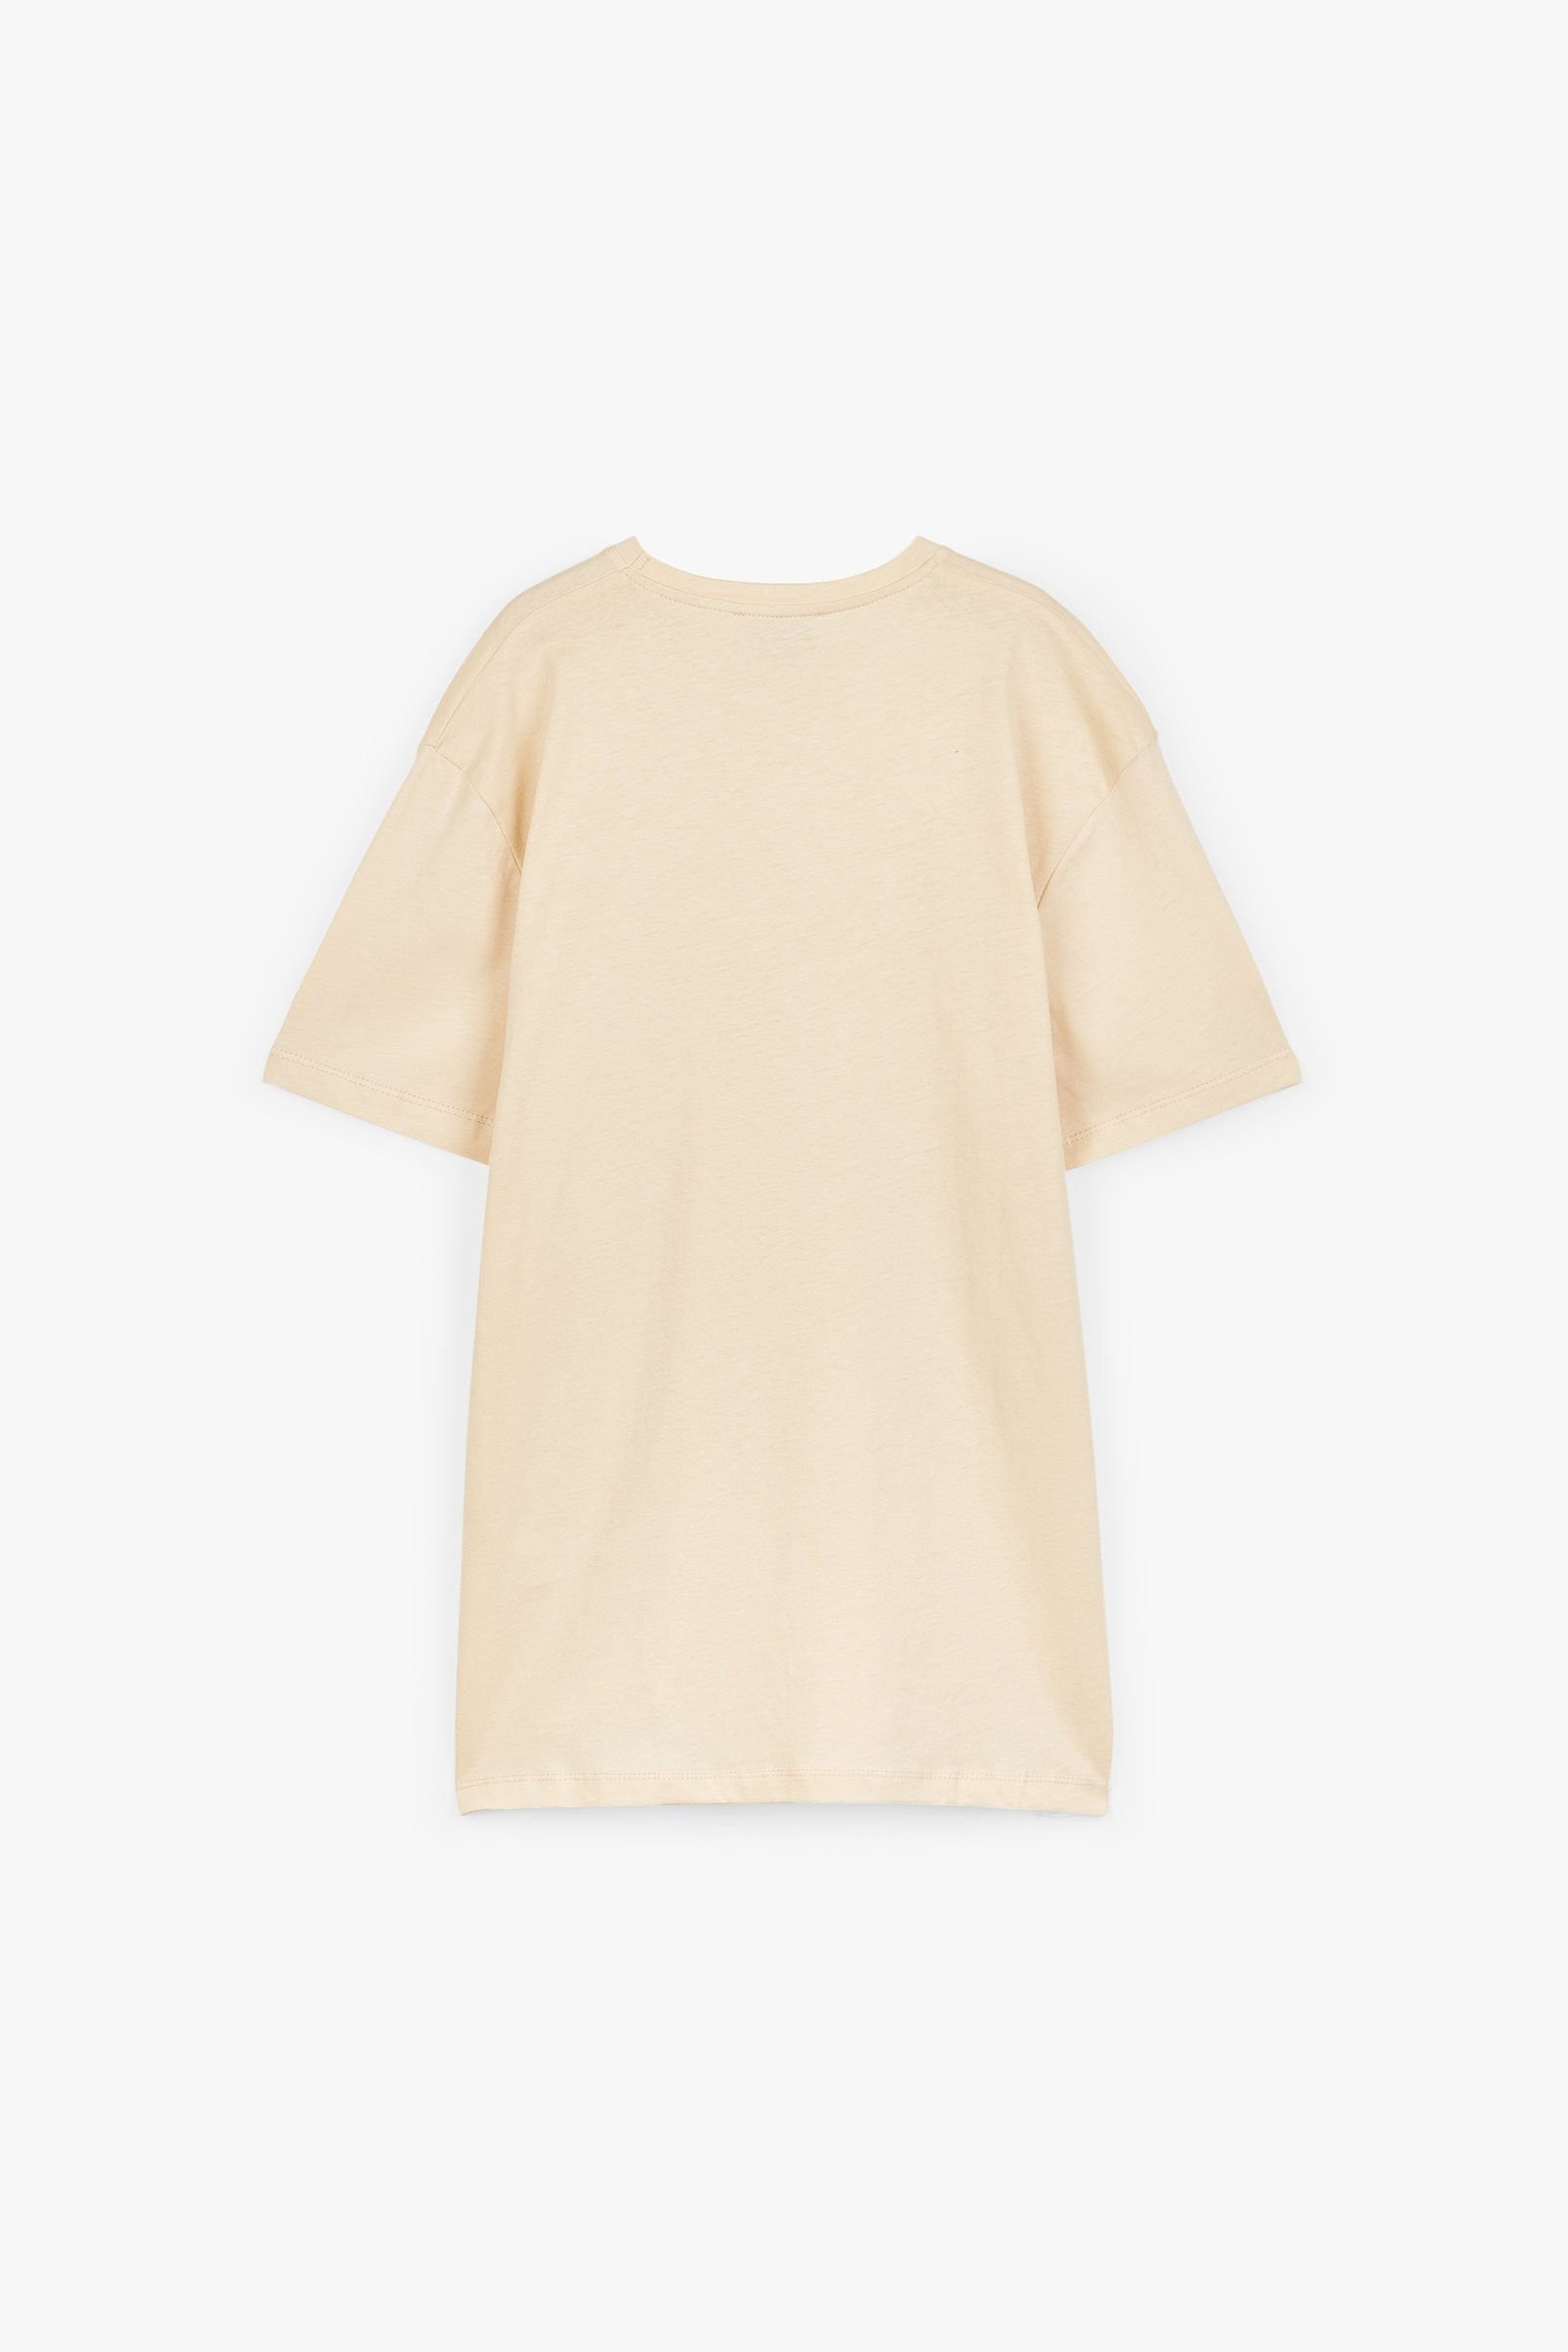 CKS Dames - ASPEN - t-shirt à manches courtes - beige clair